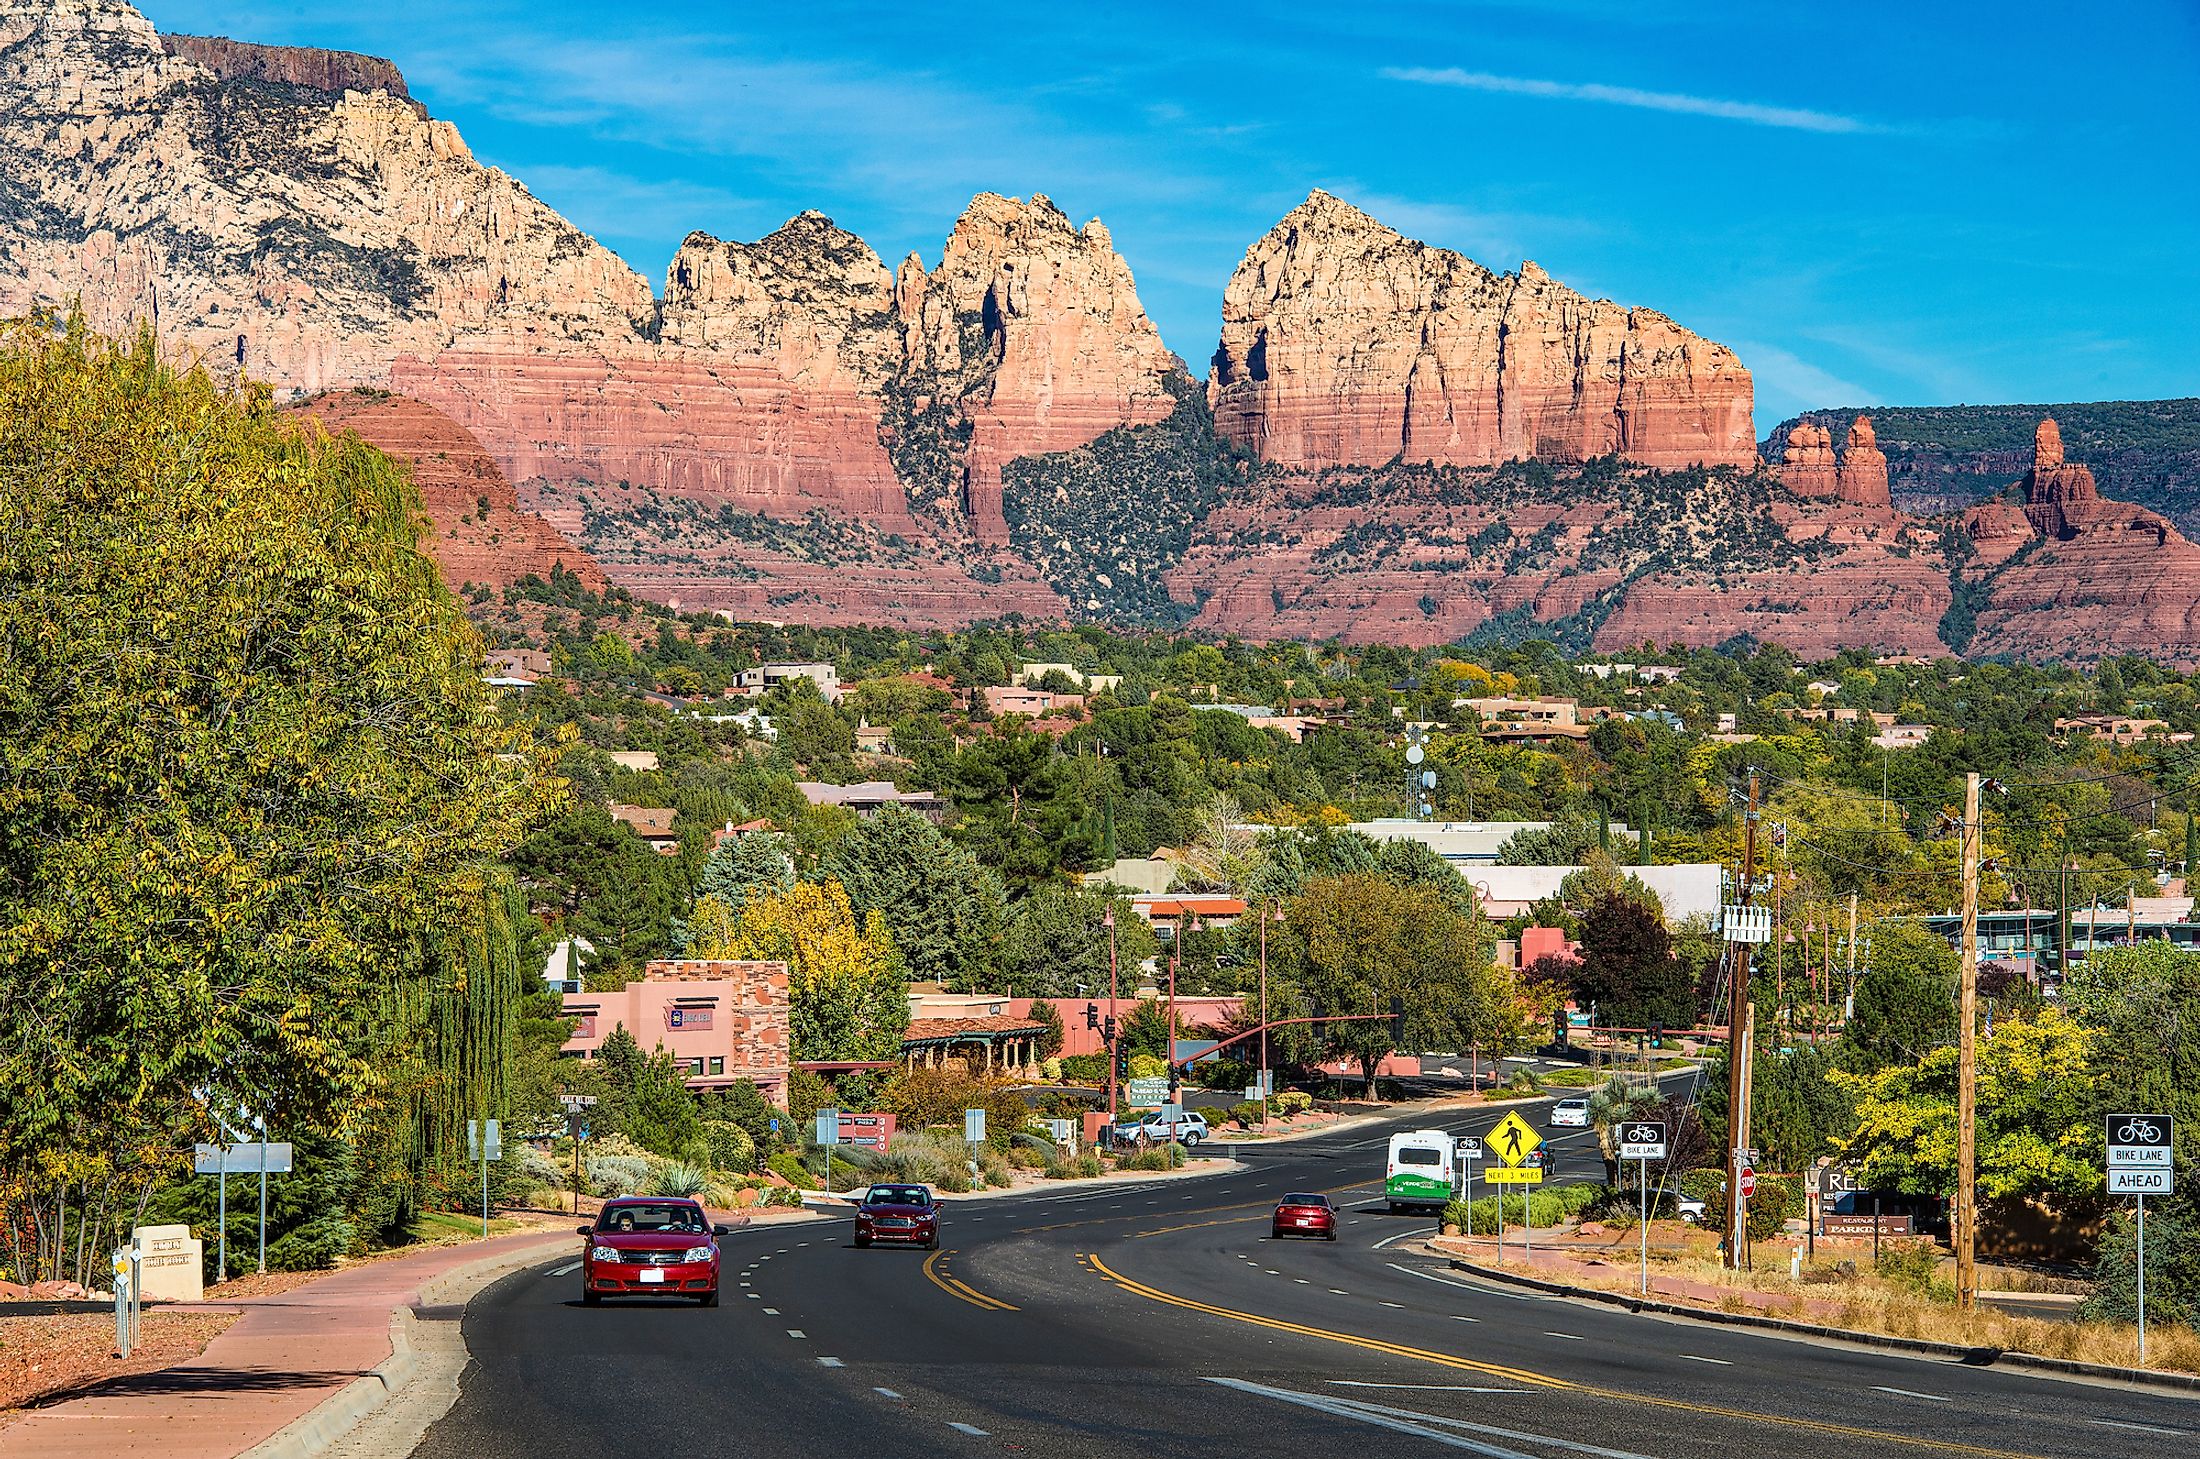 Highway passing through the gorgeous town of Sedona, Arizona